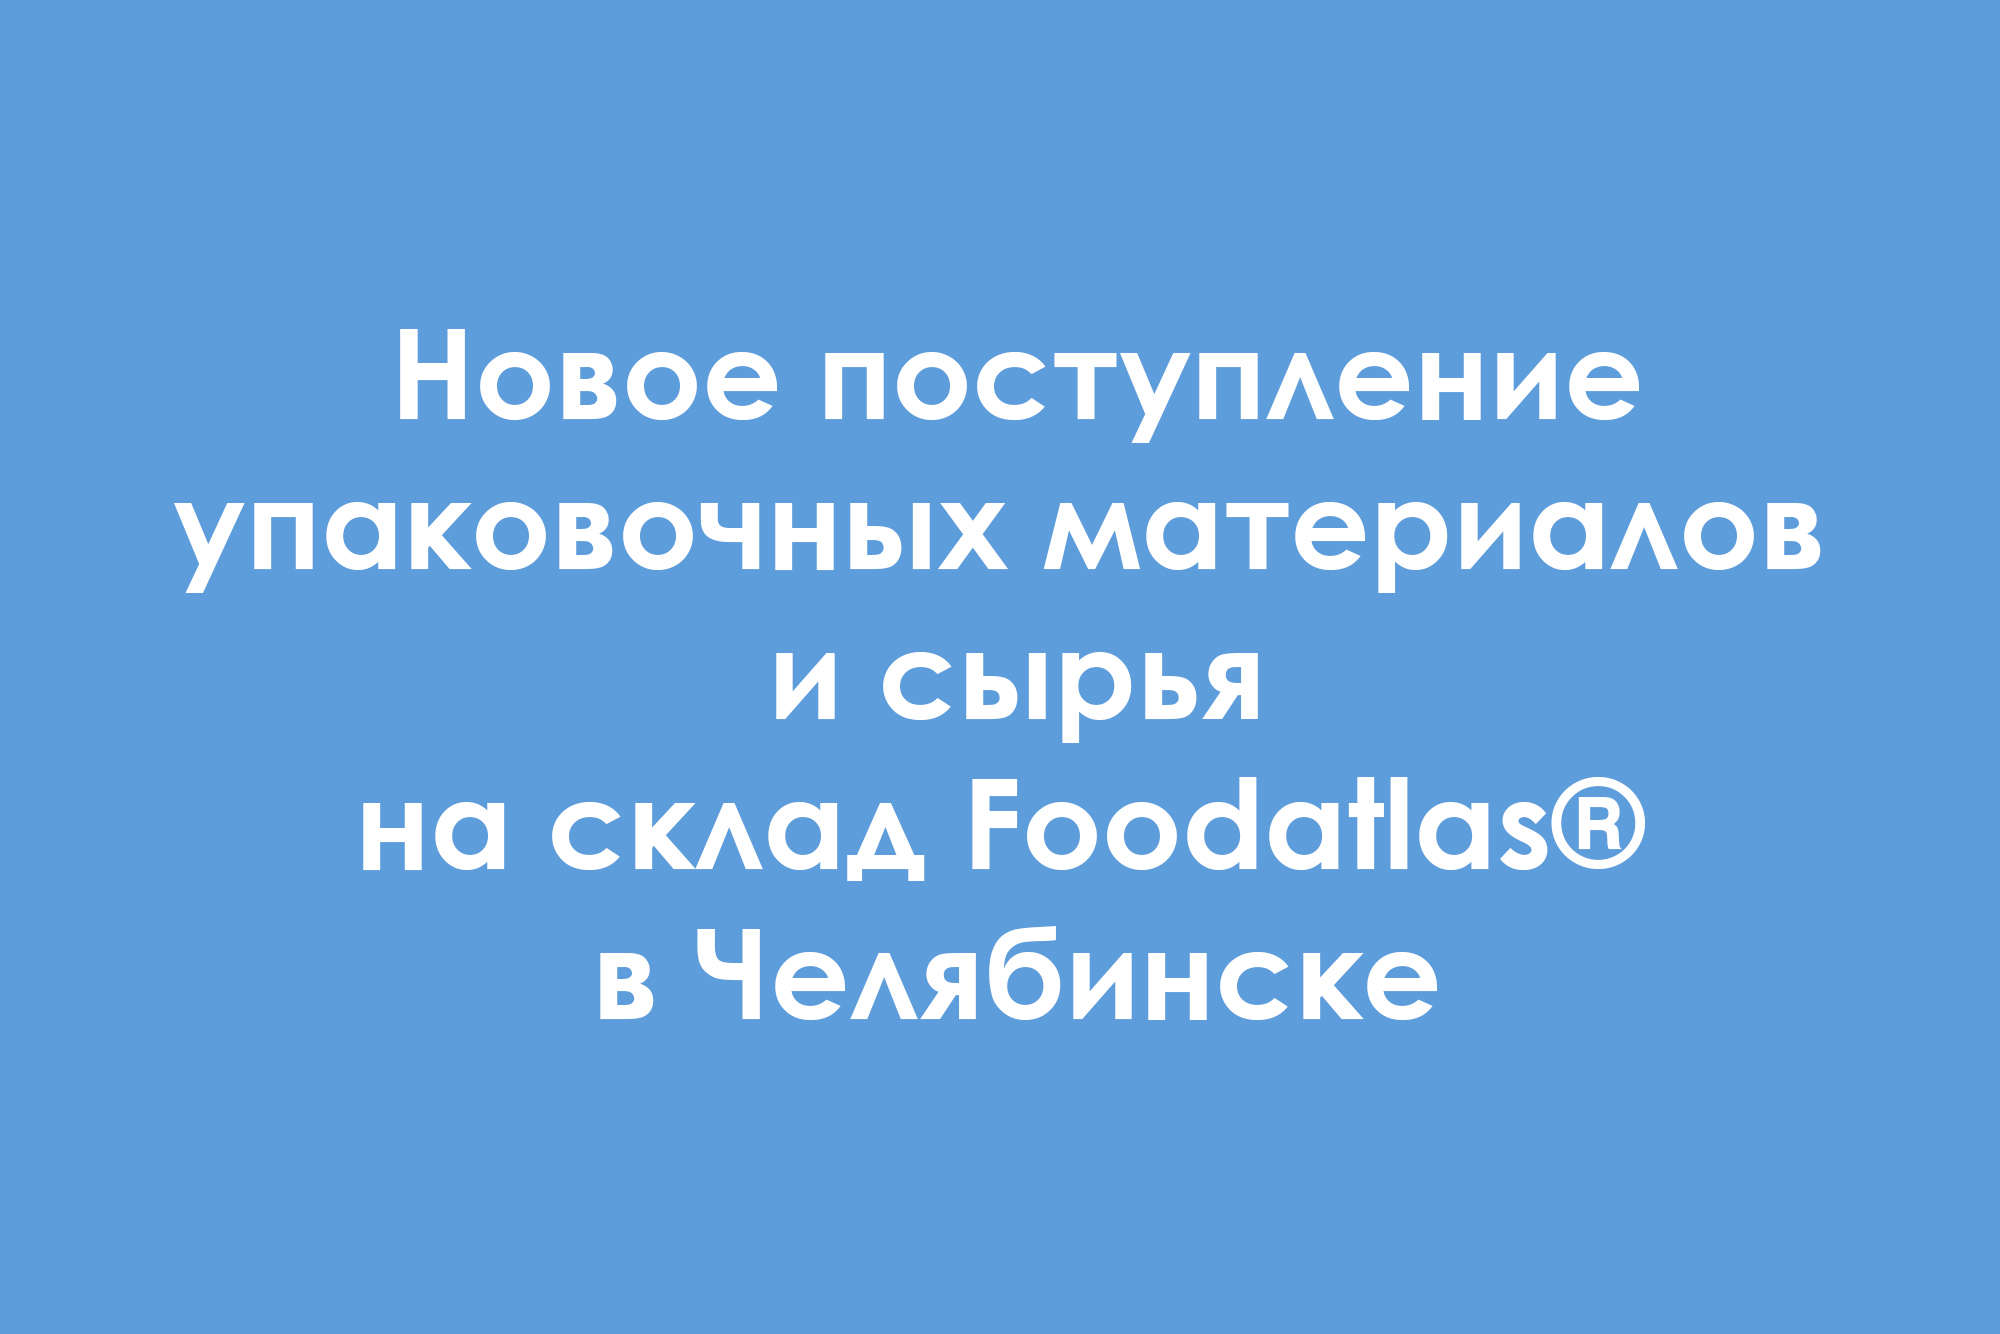 Новое поступление упаковочных материалов и сырья на склад Foodatlas® в Челябинске